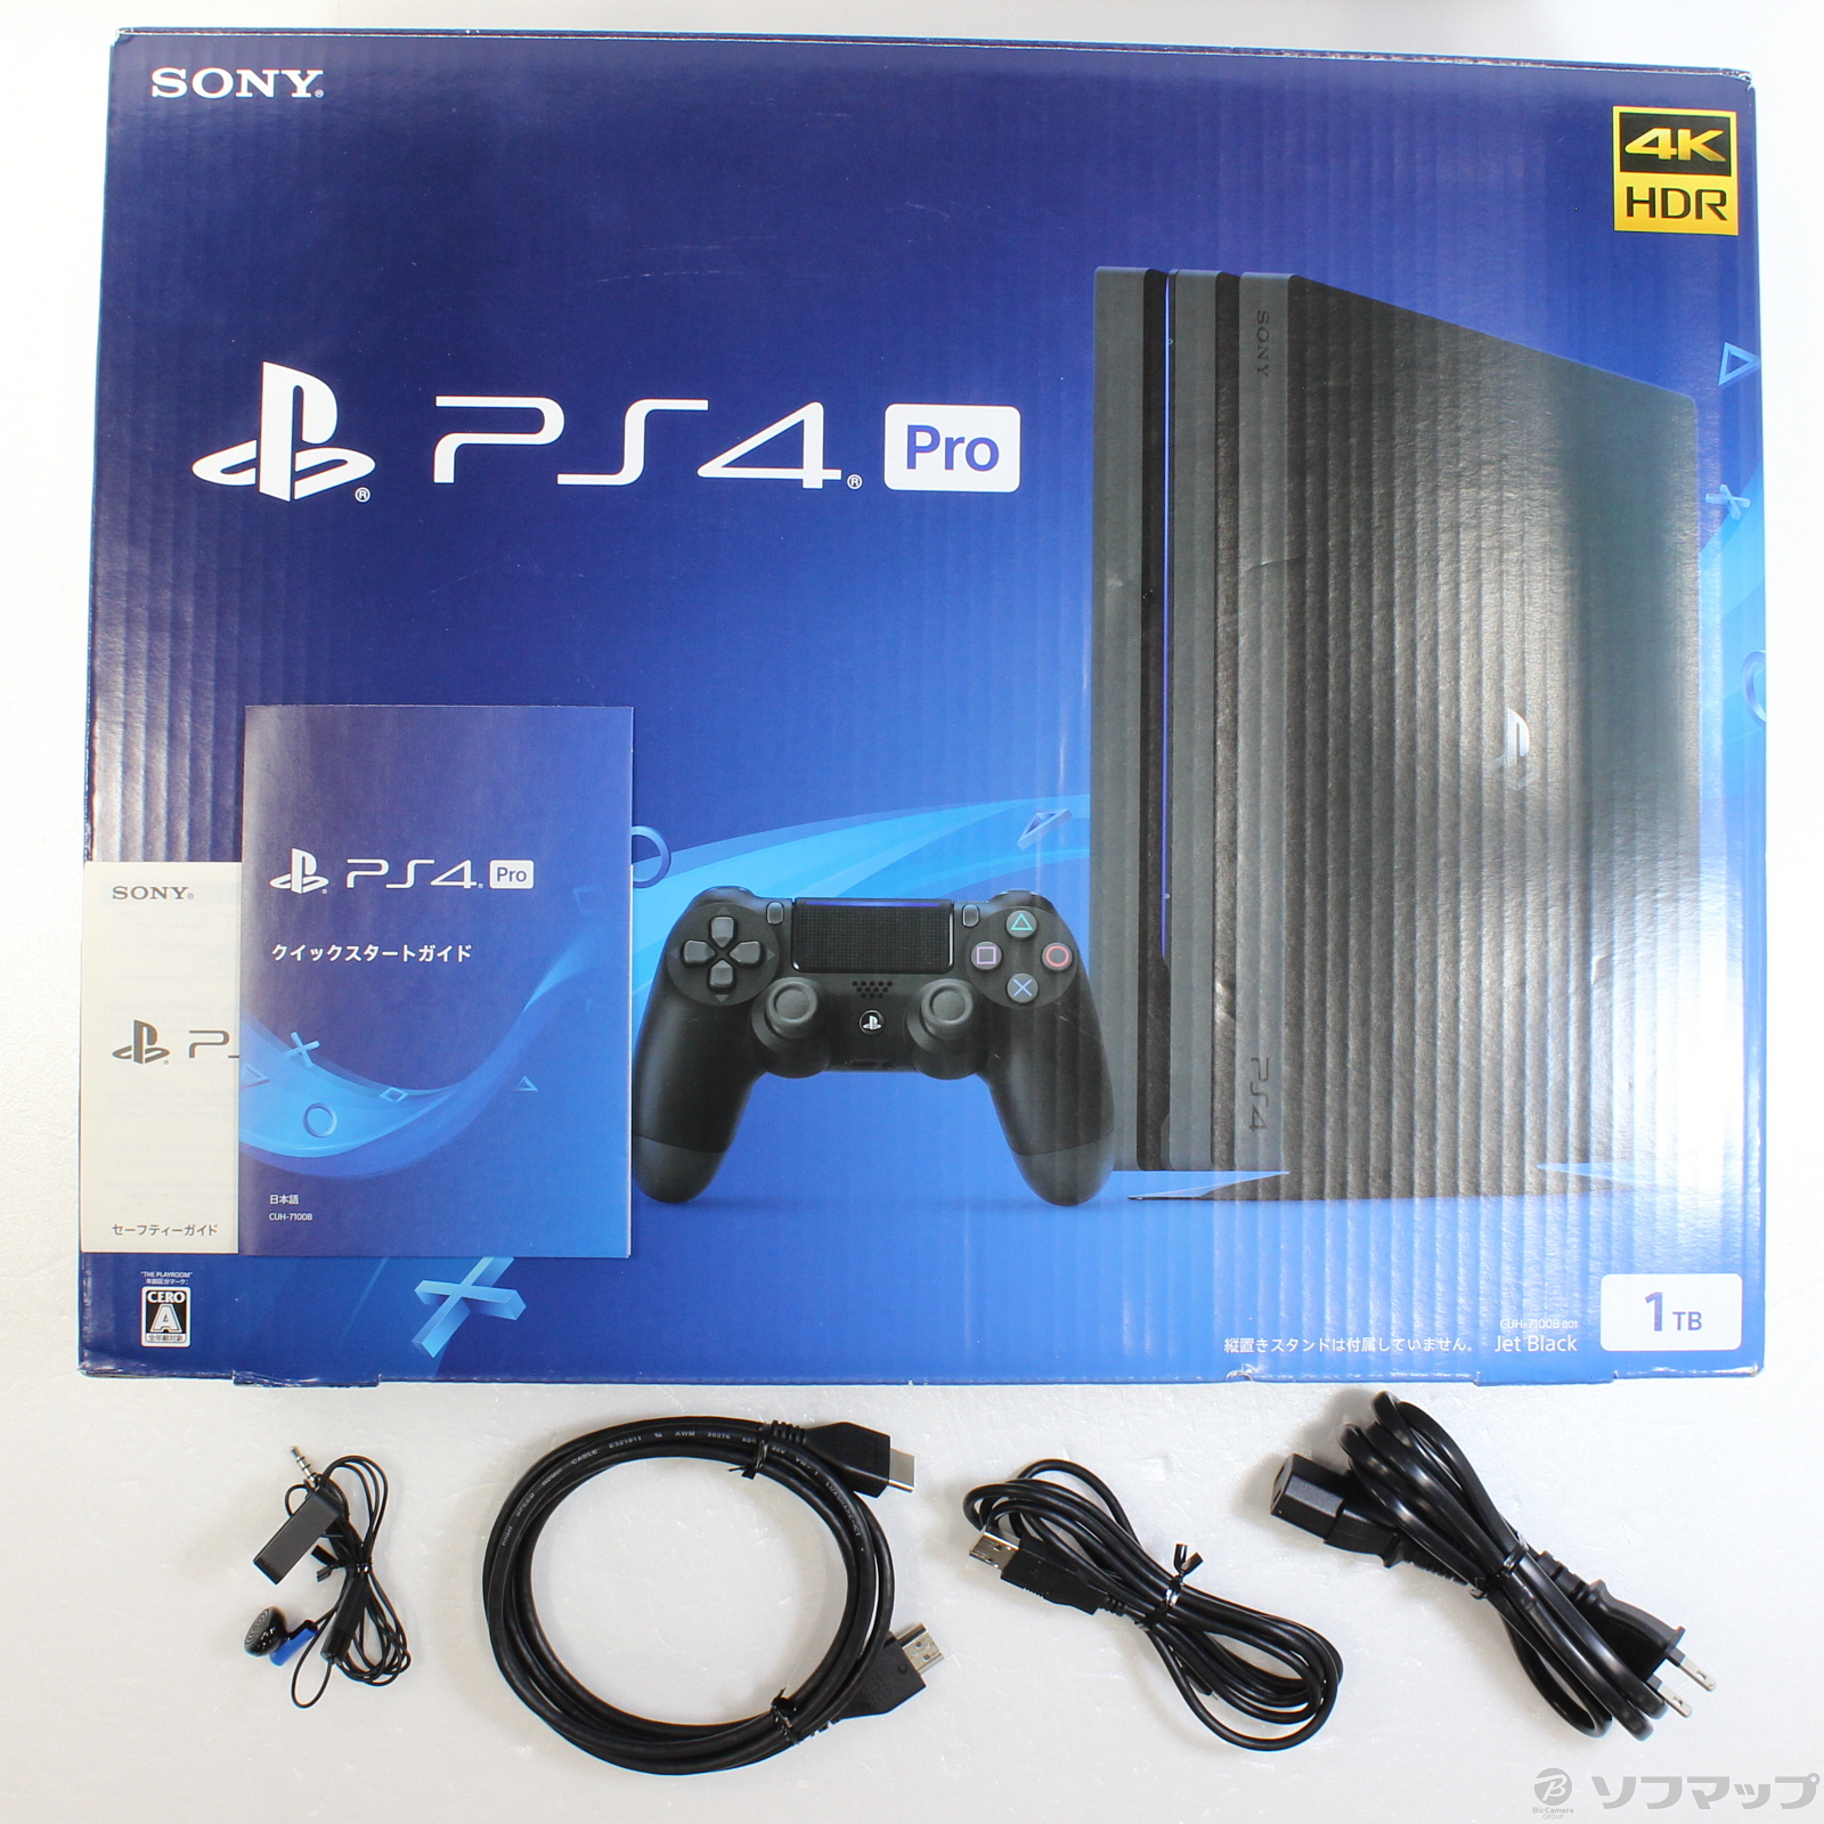 PlayStation4Pro CUH-7100B 1TB